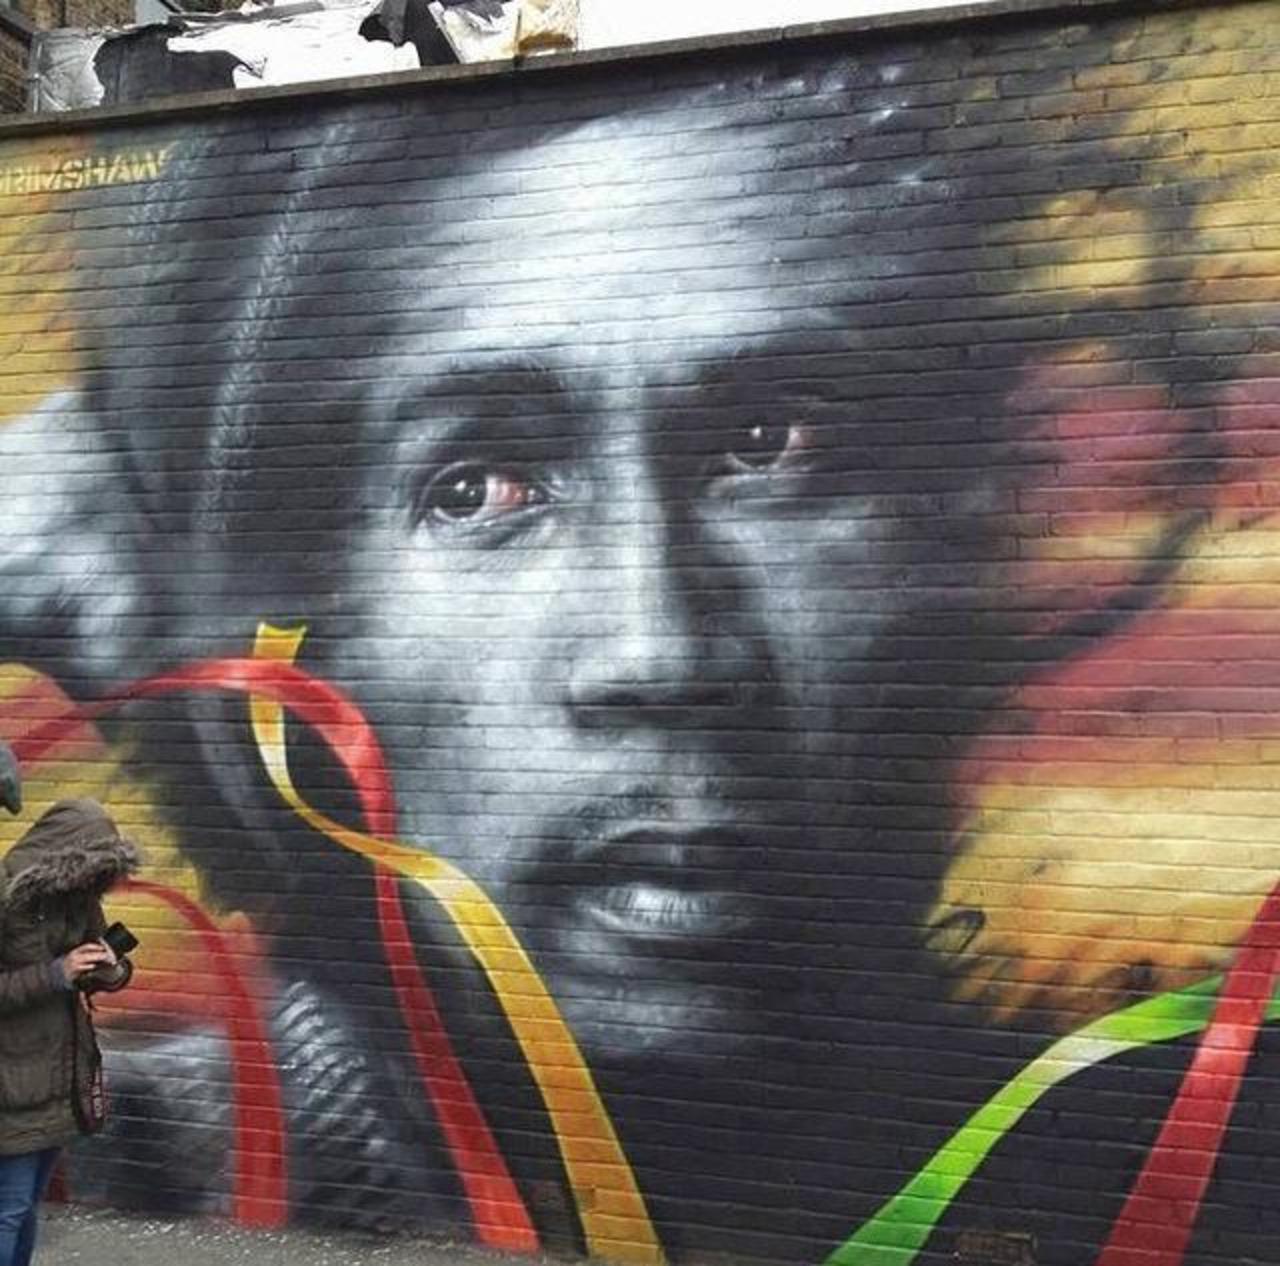 Bob Marley Street Art portrait by Dale Grimshaw in London 

#art #arte #graffiti #streetart http://t.co/QYuyNpZkSB